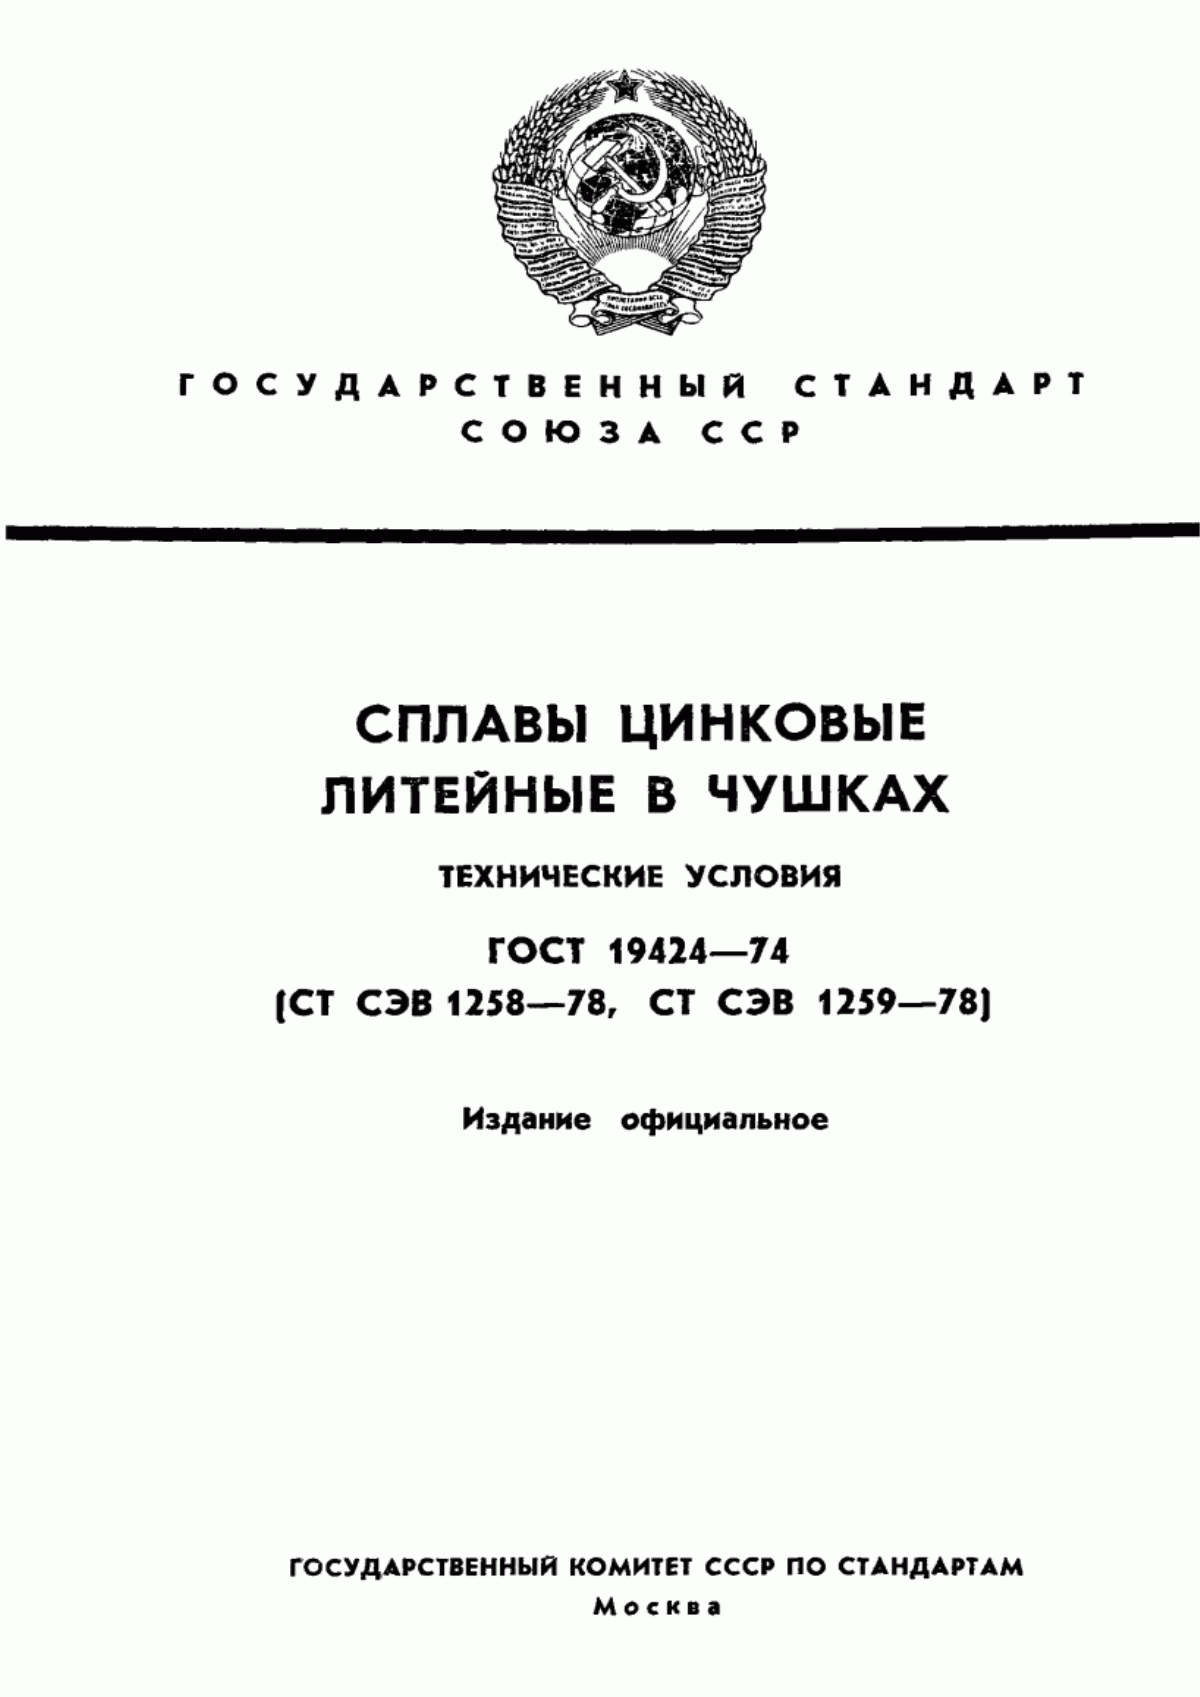 ГОСТ 19424-74 Сплавы цинковые литейные в чушках. Технические условия